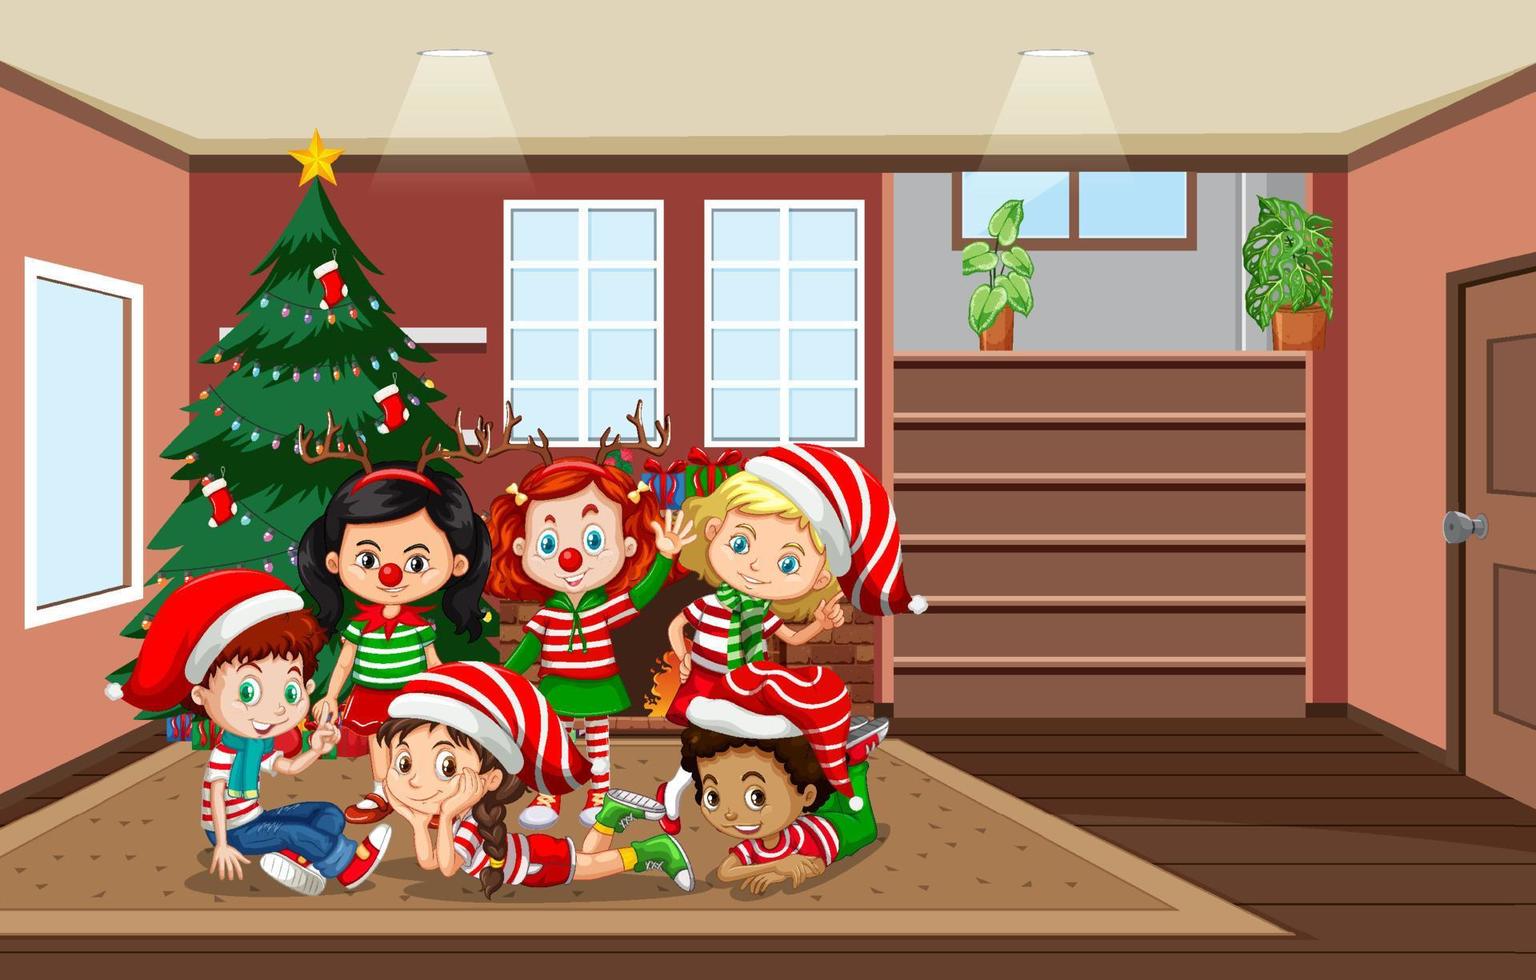 Room scene with children celebrating Christmas vector